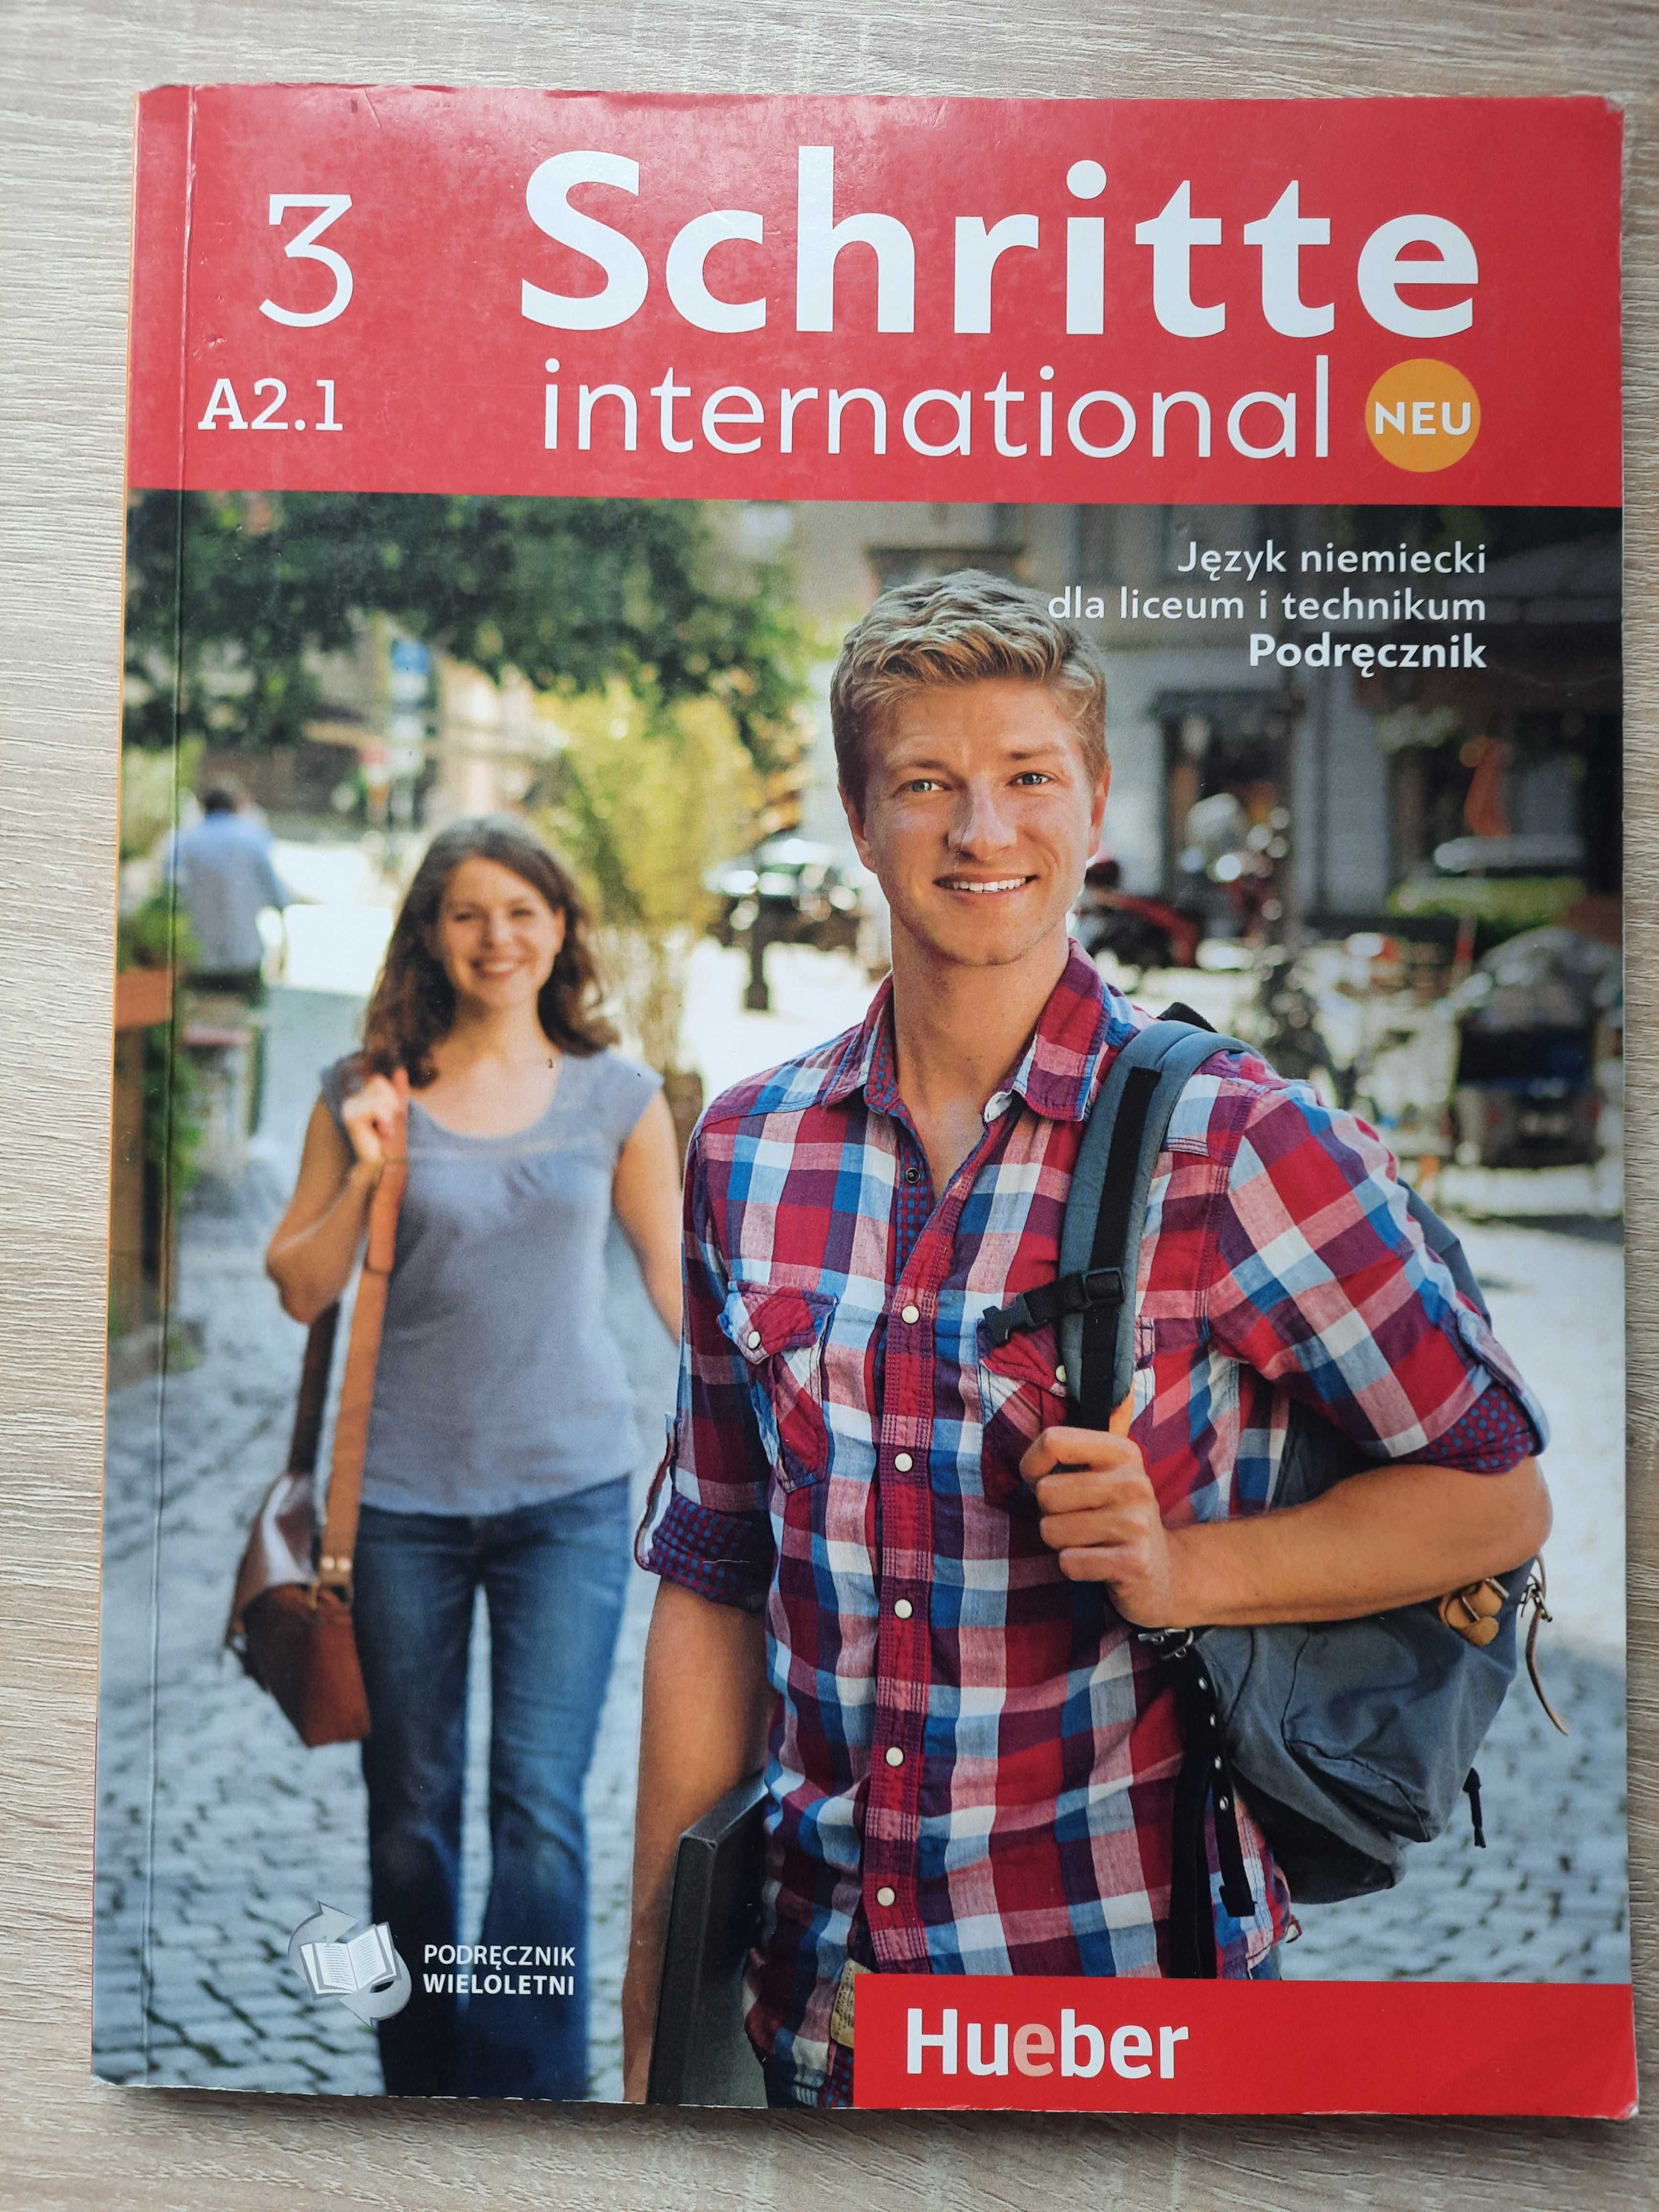 Schritte international neu 3 podręcznik język niemiecki liceum